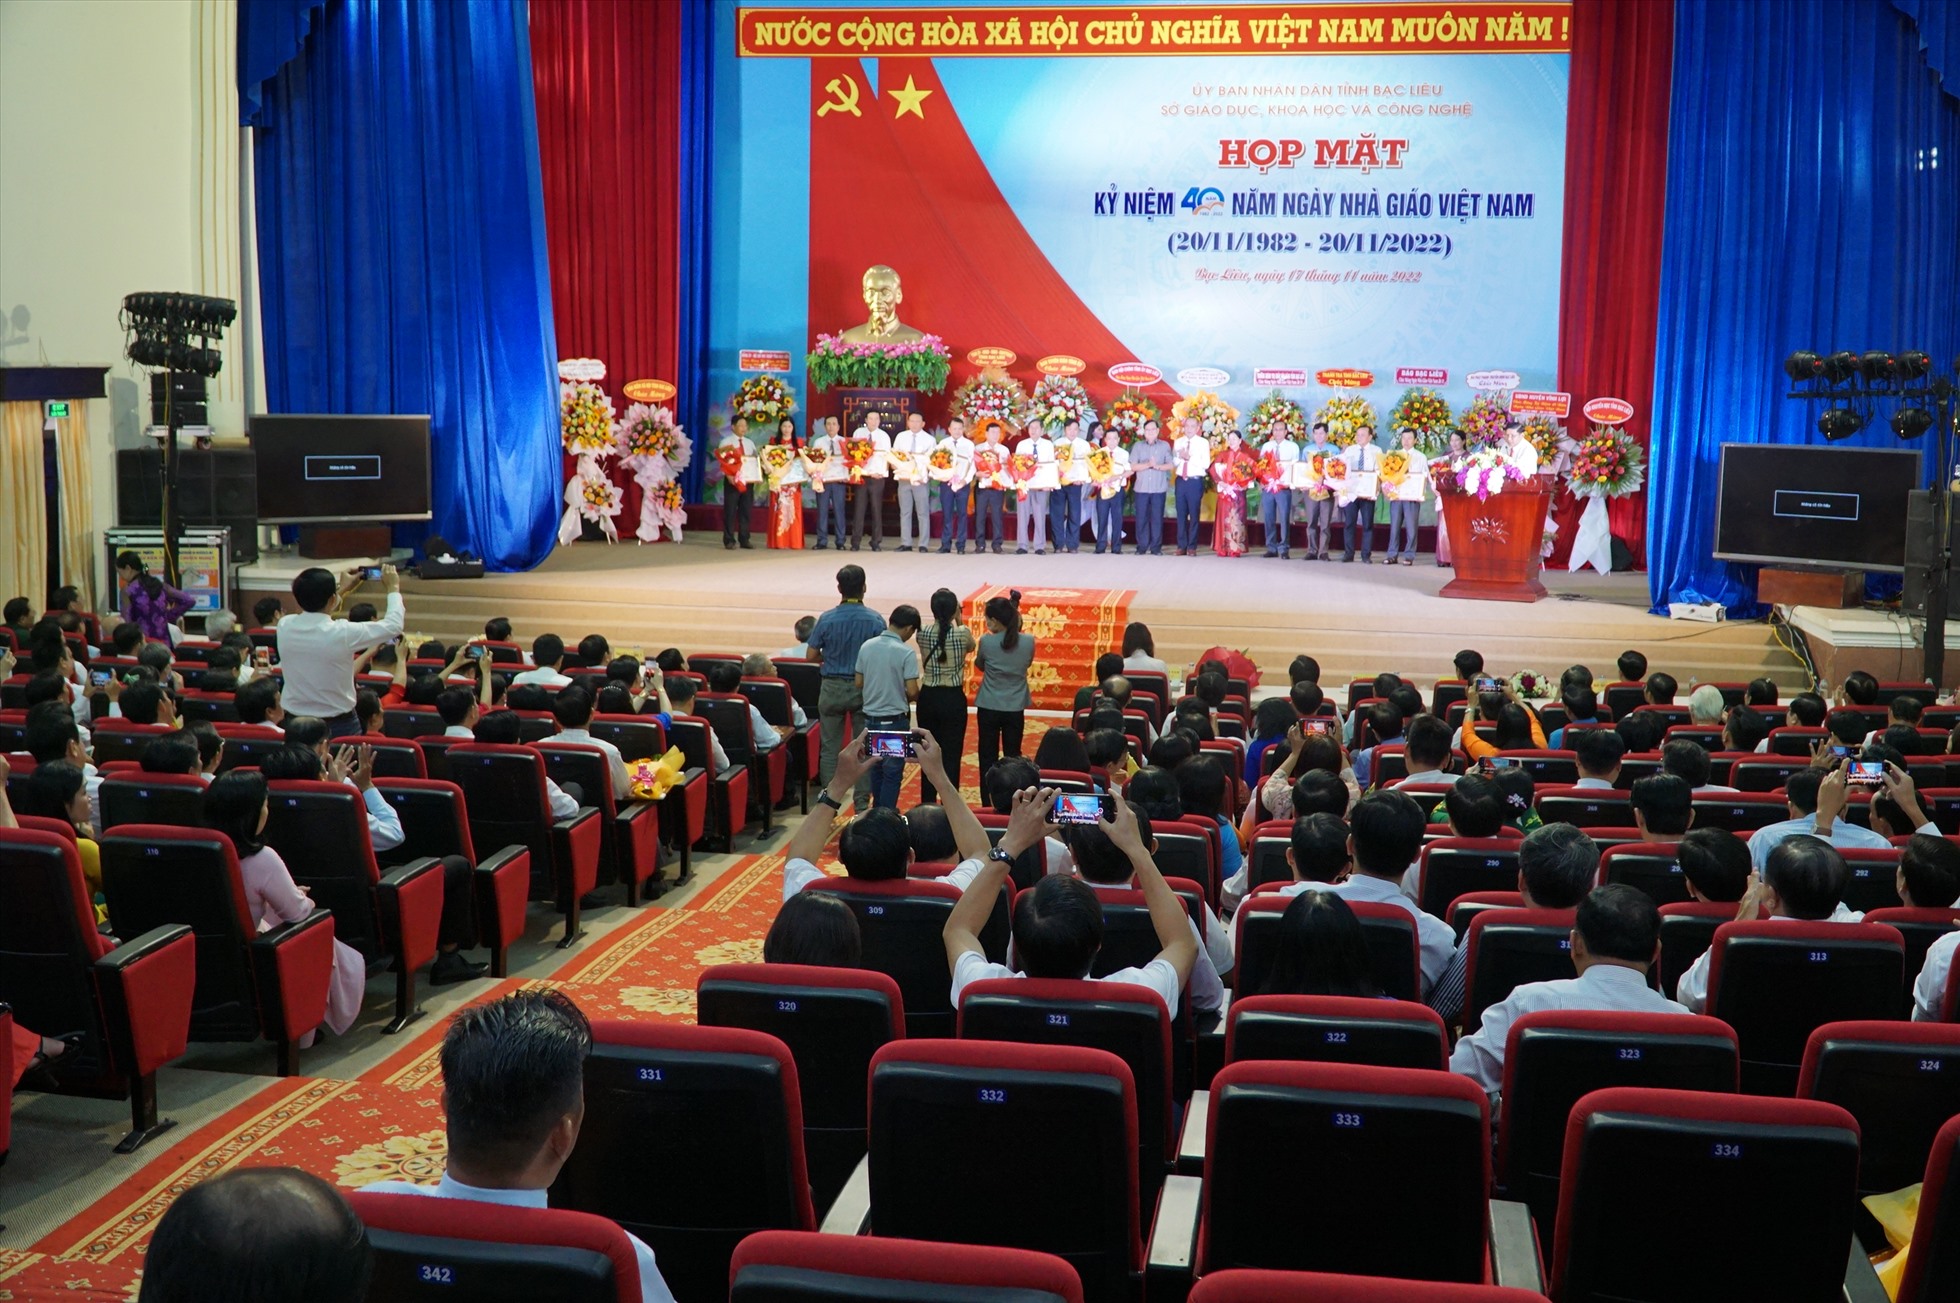 Chiều ngày 17.11, tỉnh Bạc Liêu long trọng tổ chức lể kỷ niệm Ngày Nhà giáo Việt Nam. Ảnh: Nhật Hồ